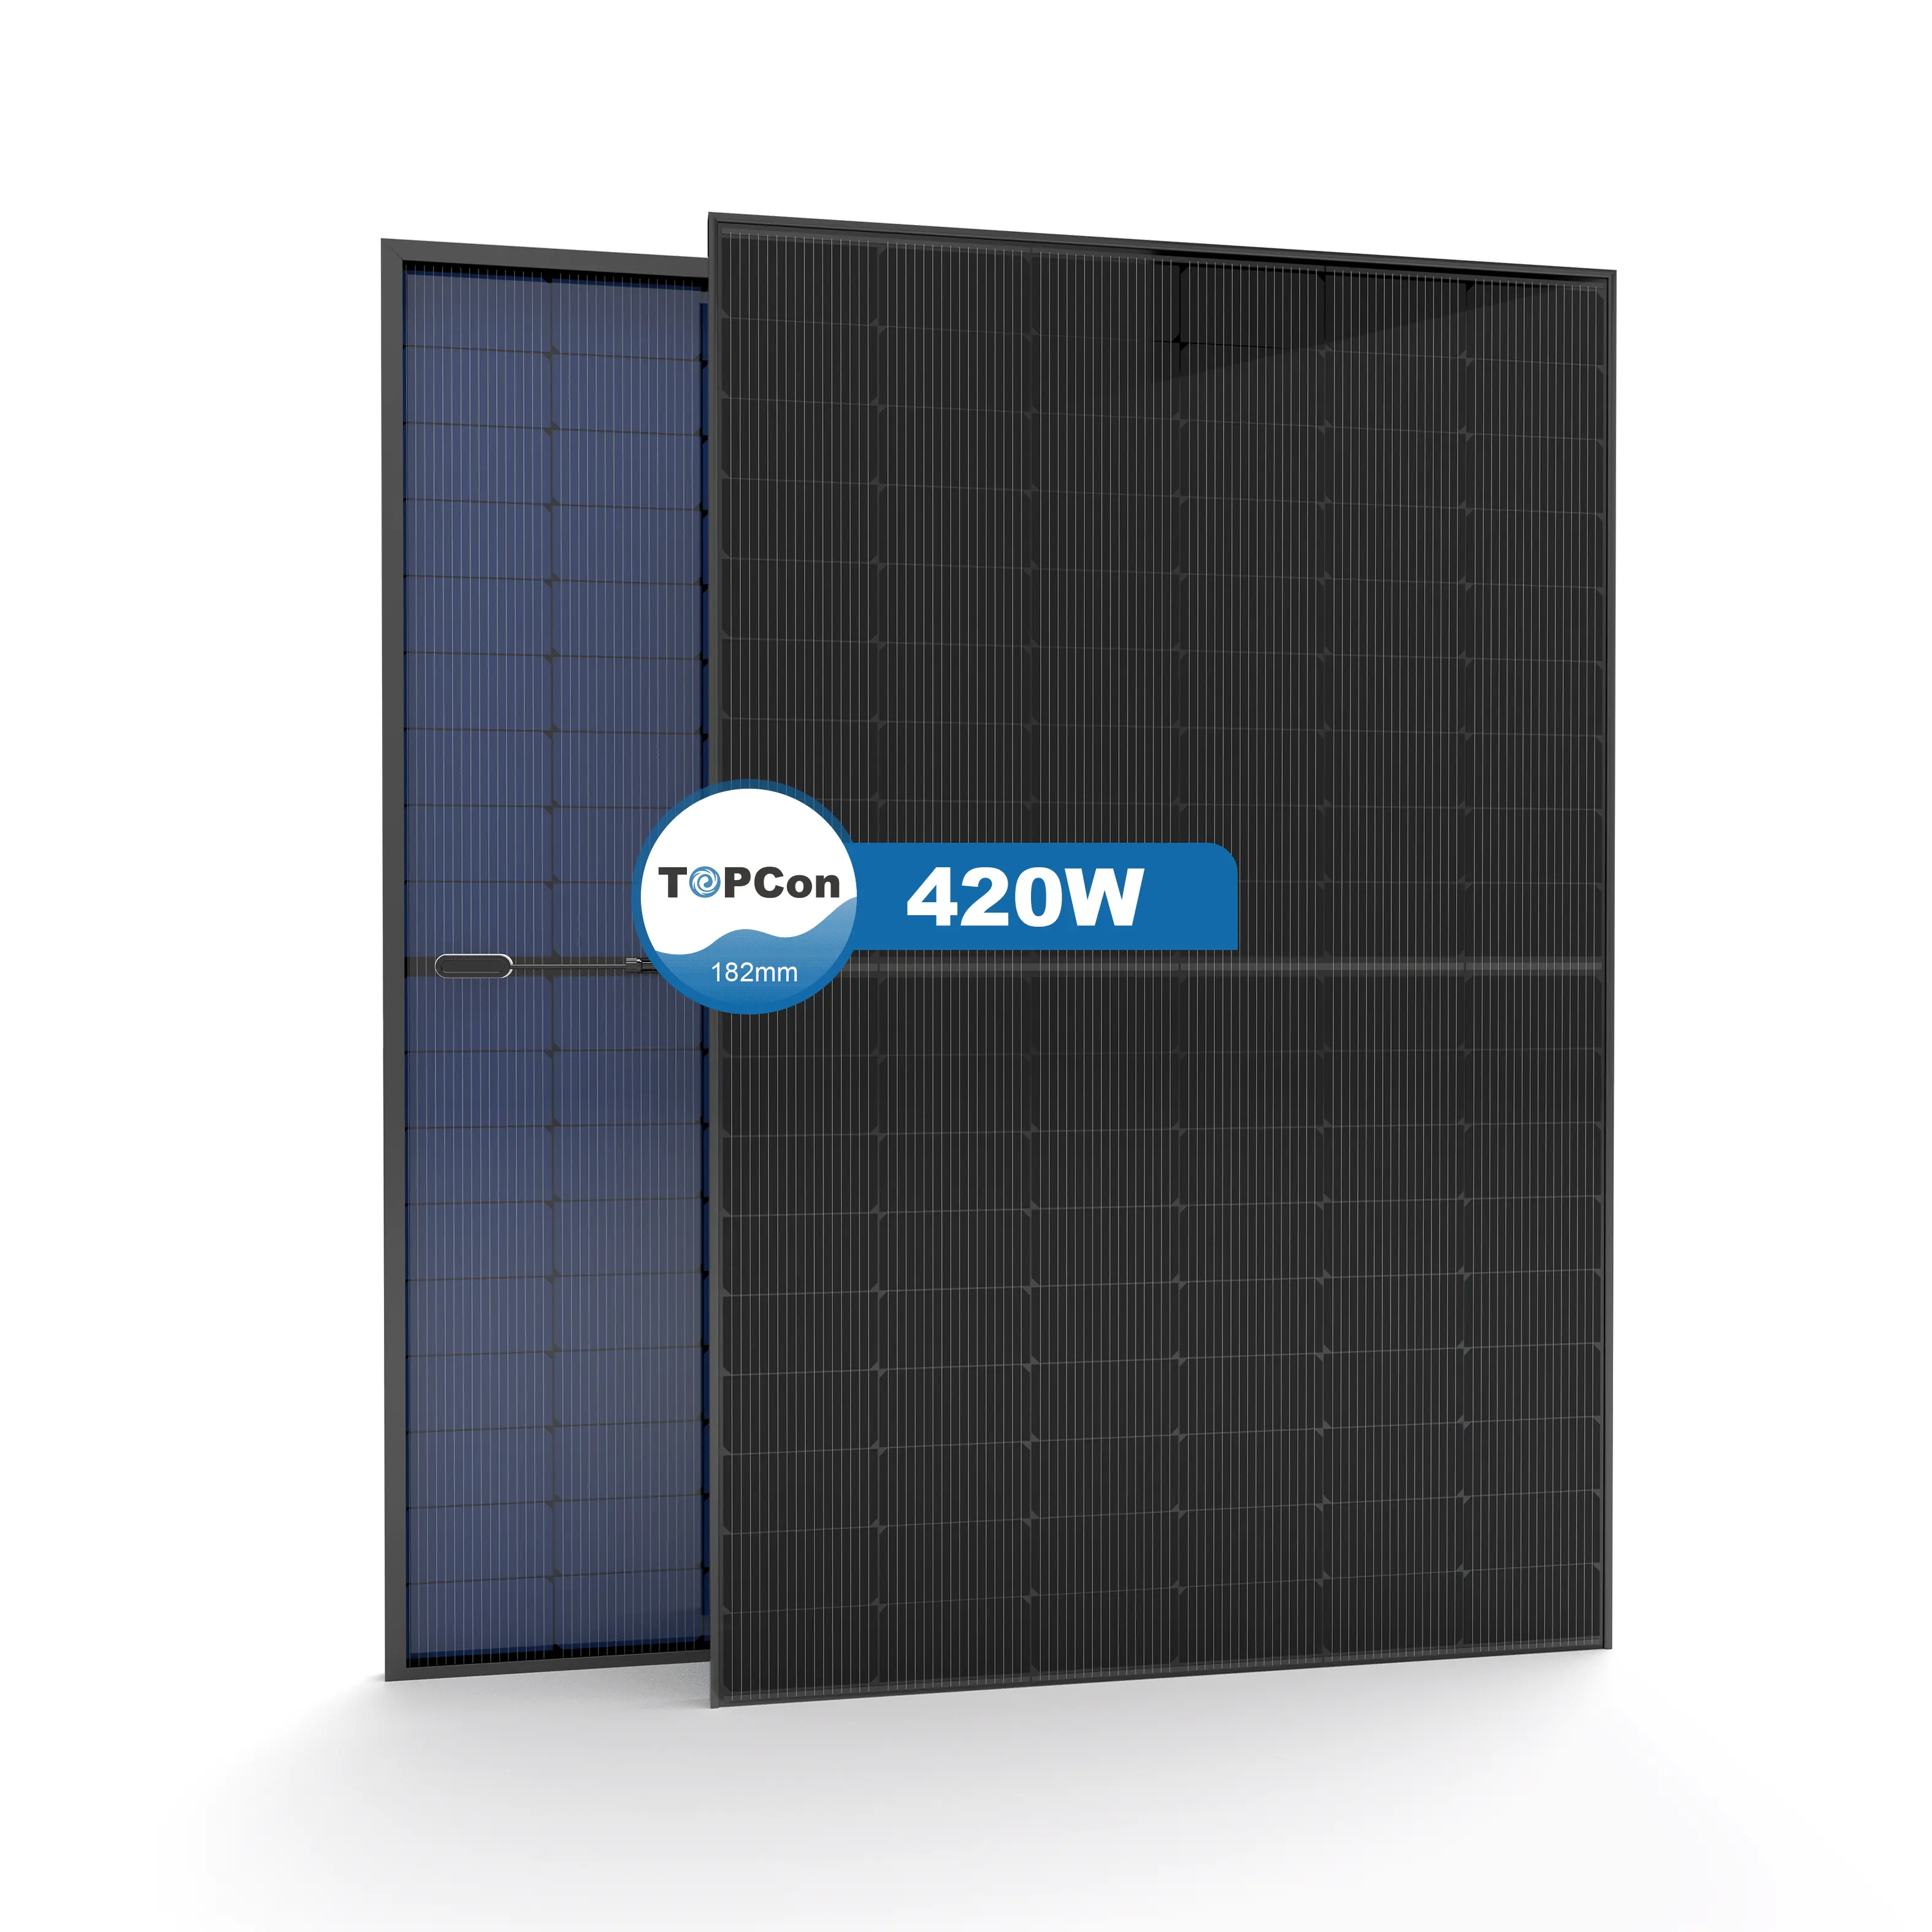 Alemanha n tipo eu armazém solar paneles solares 450 watts 410w 430W painéis solares monocristalinos na eu estoque armazém